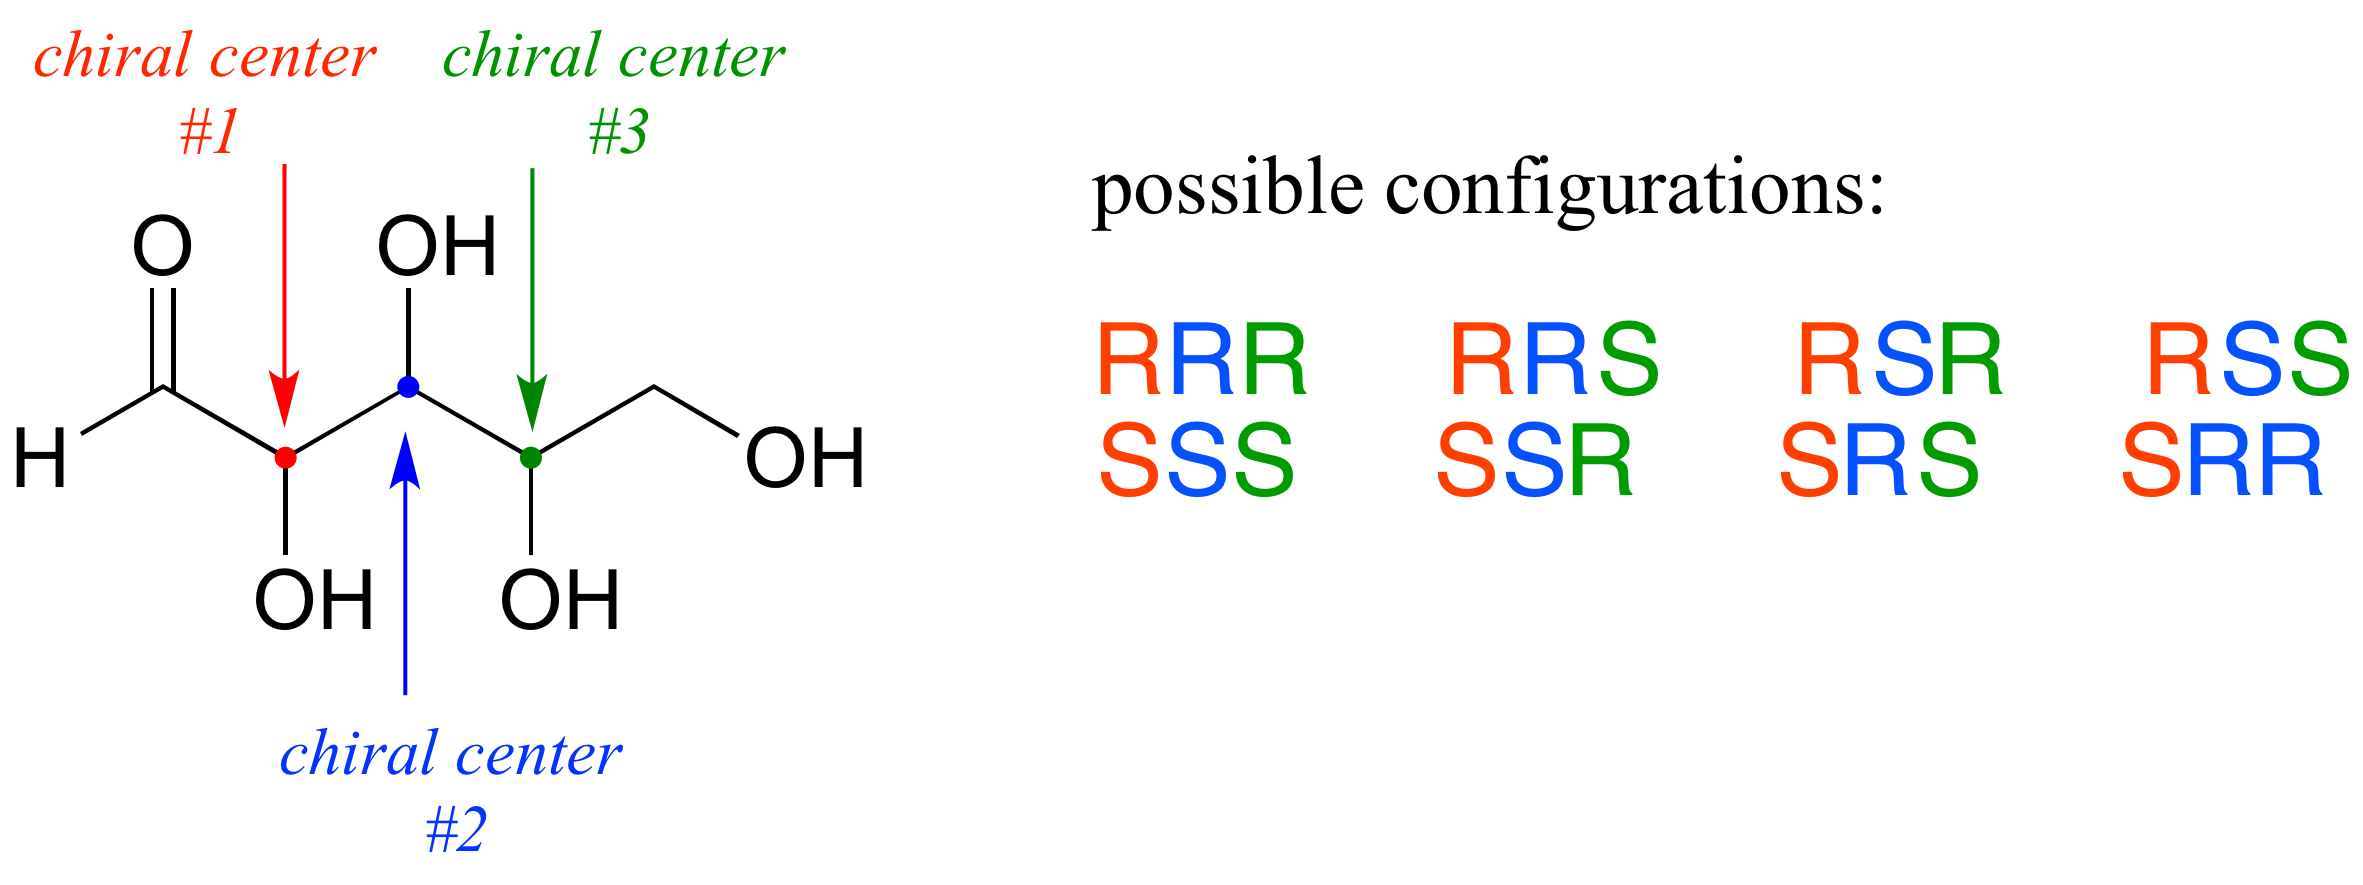 Molécula con tres centros quirales (el número 1 es rojo, el número 2 es azul y el número 3 es verde). Las configuraciones posibles son (centro uno listado primero, centro dos segundos y centro tres últimos): R R R, R R S, R S R, R S, S S, S S, S R, S R, S R, S R R.